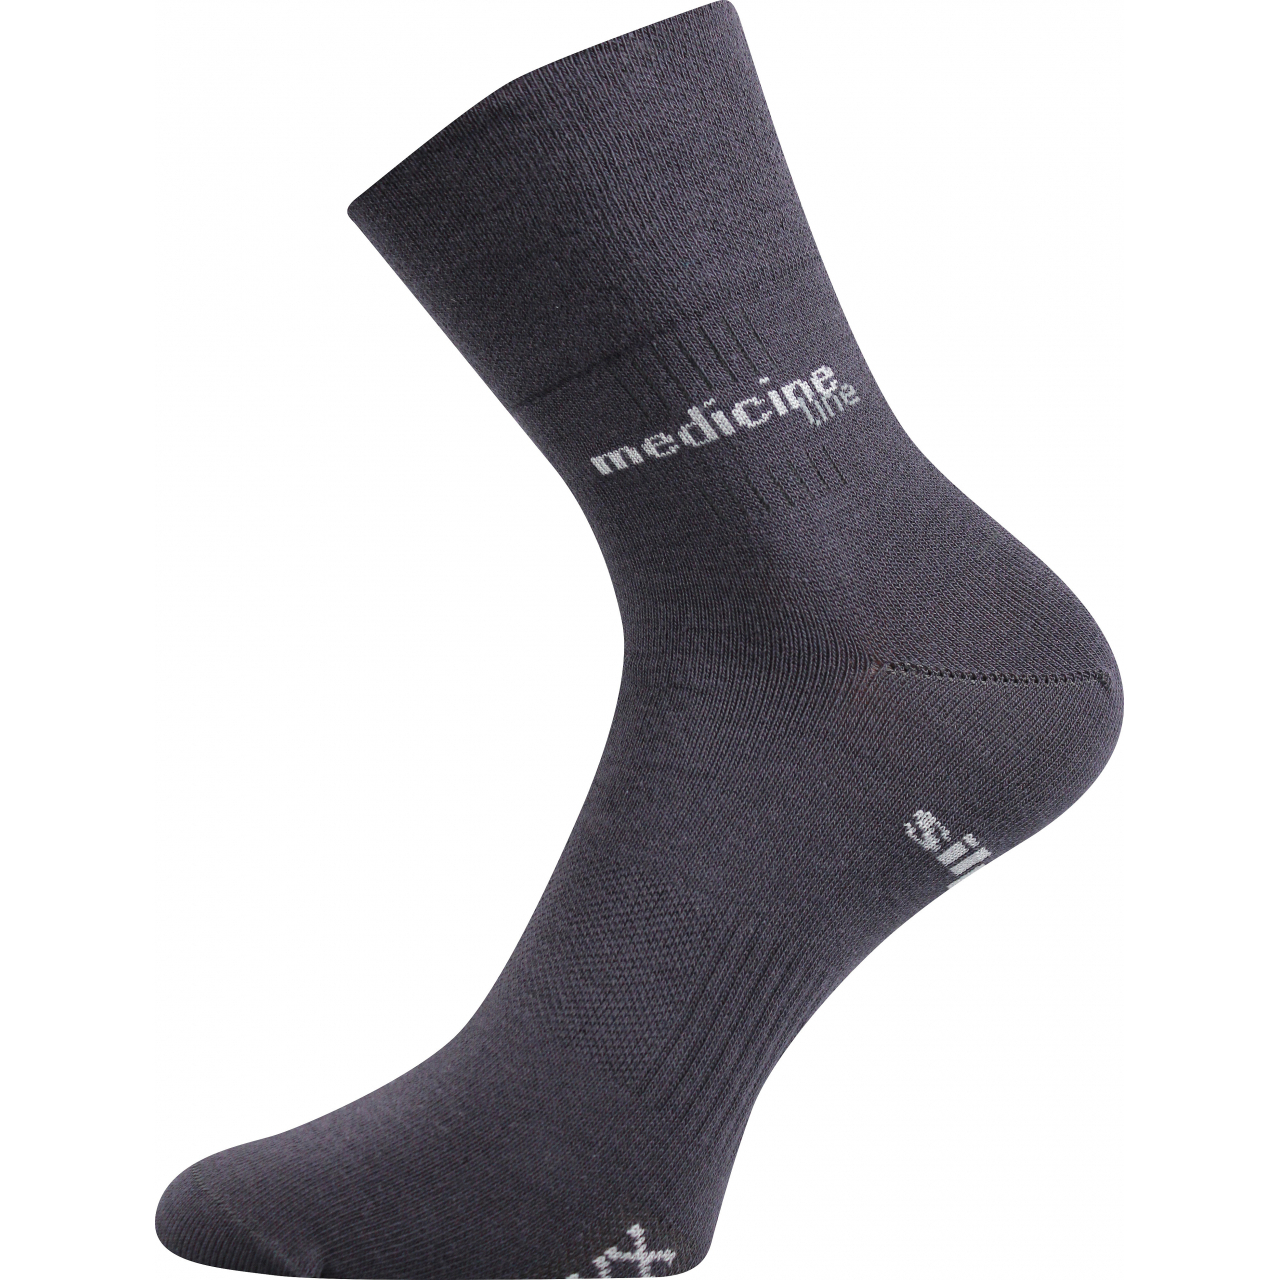 Ponožky zdravotní Mission Medicine - tmavě šedé, 39-42